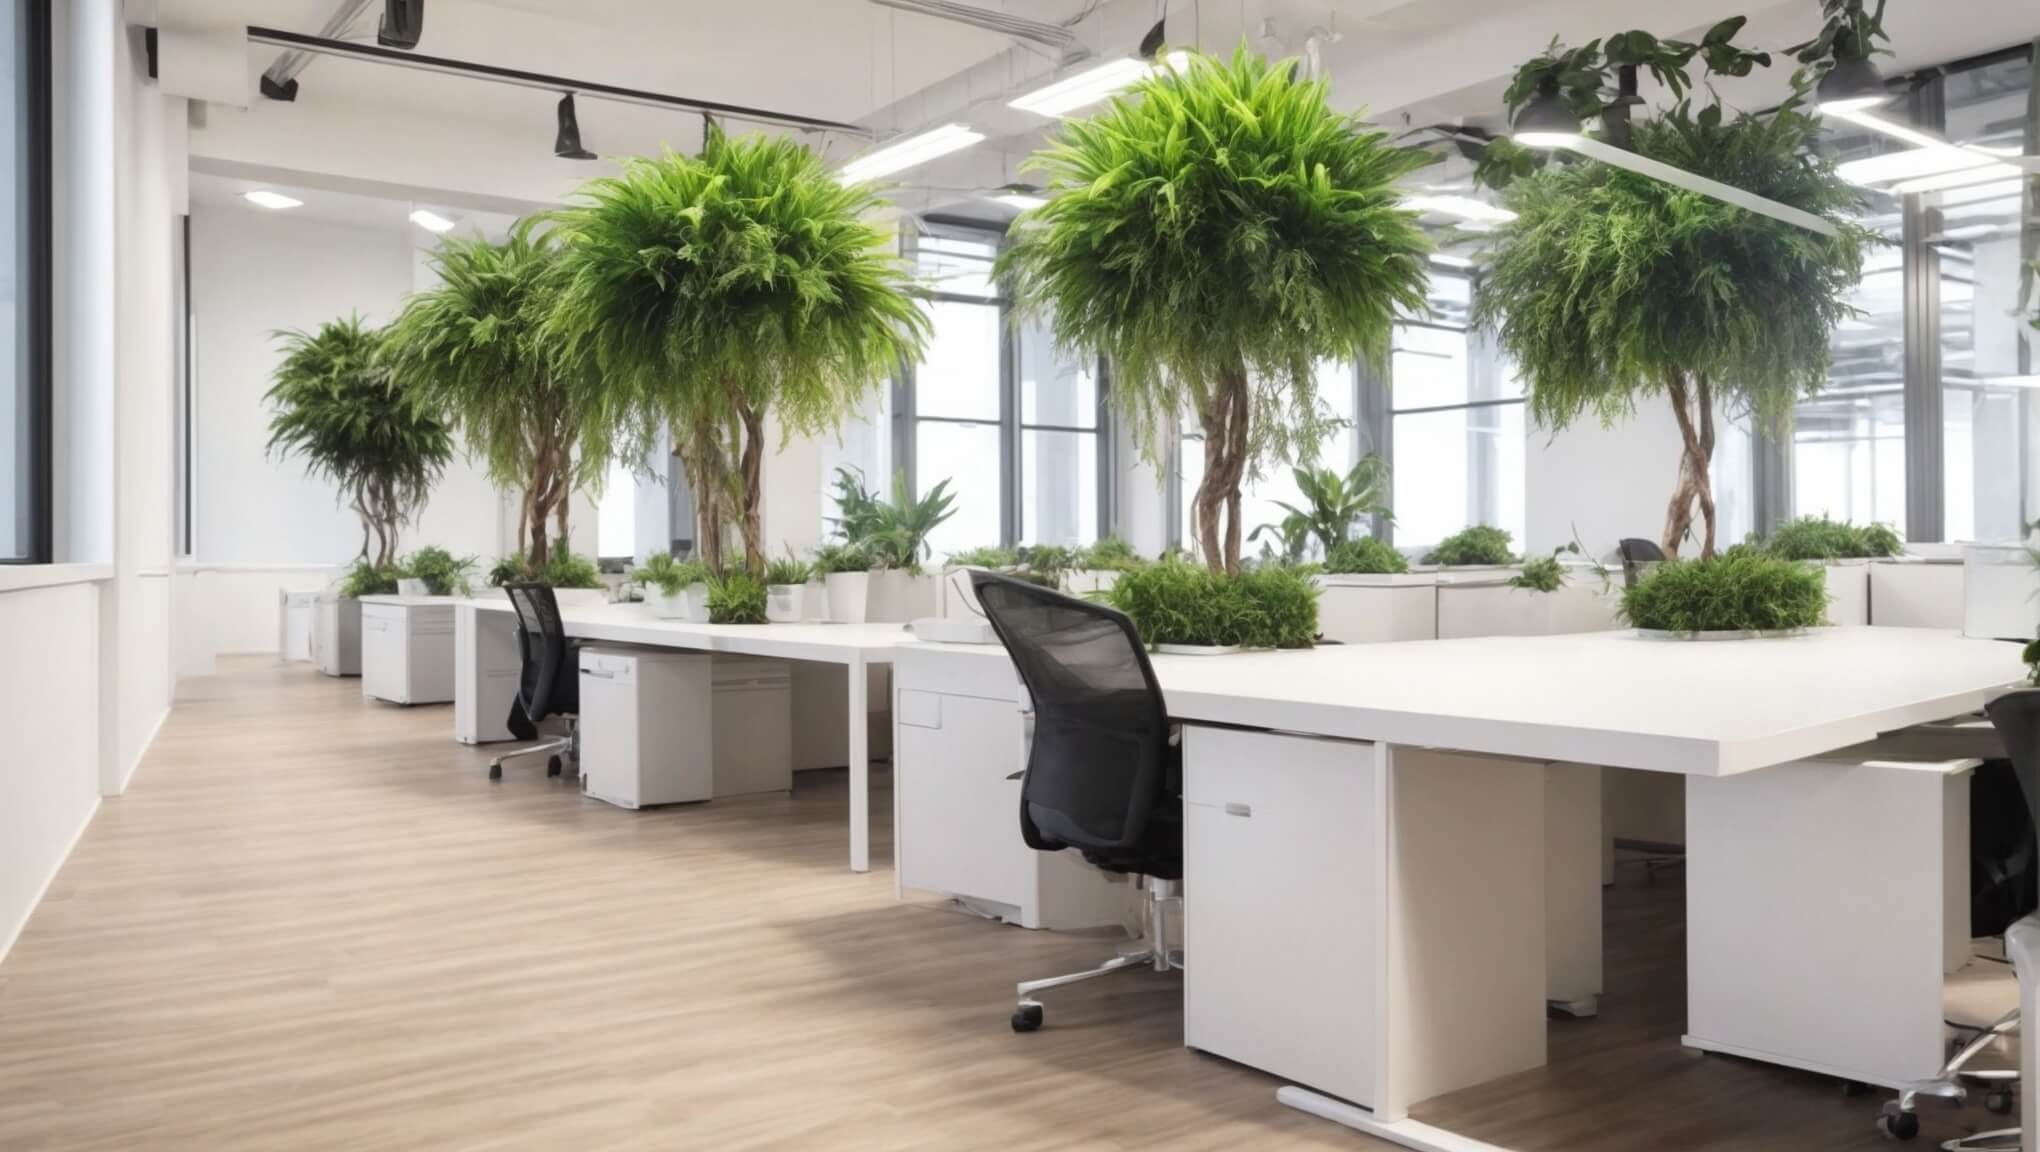  Какие искусственные растения подойдут для офиса?